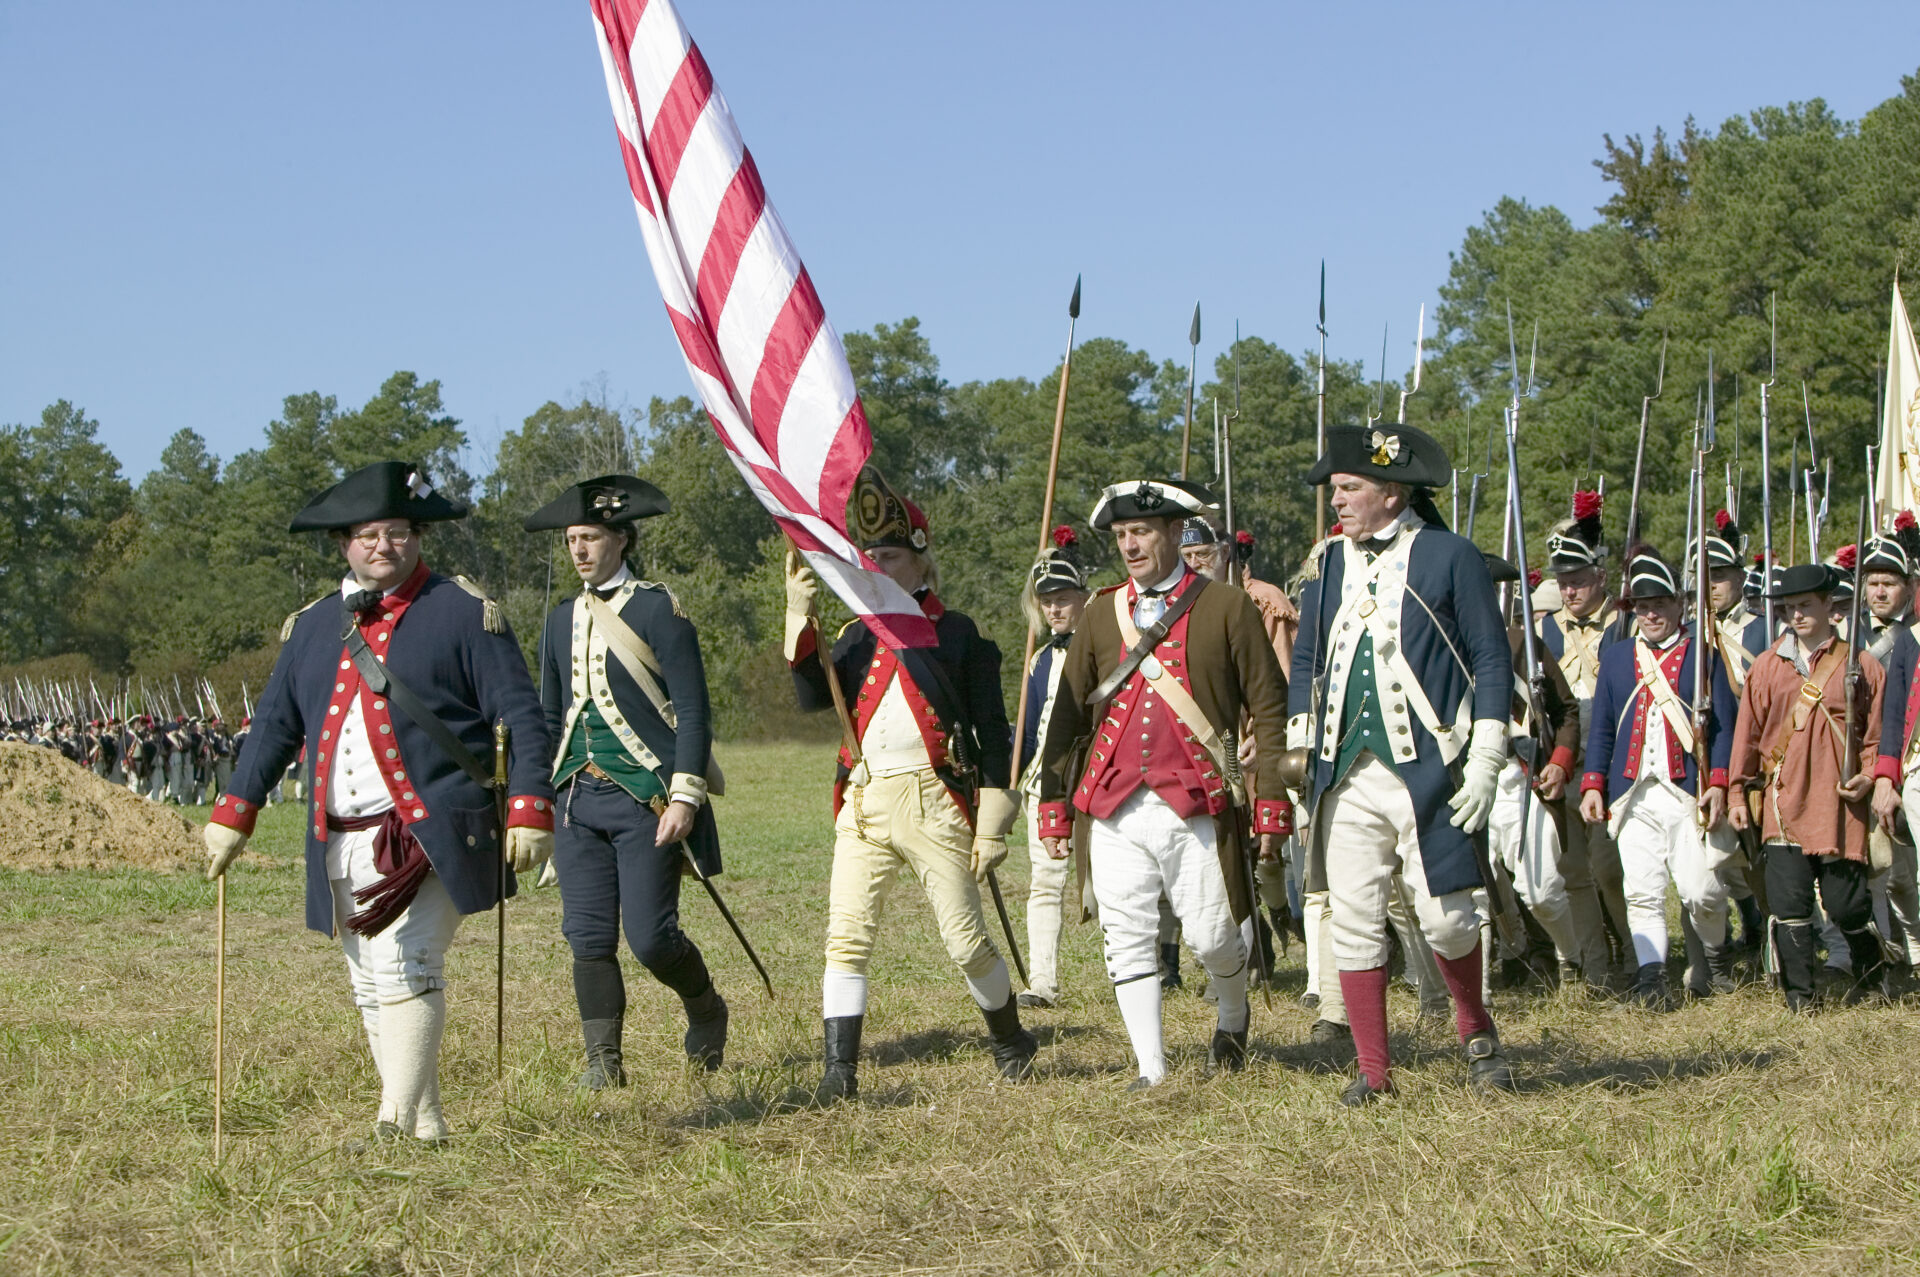 Revolução Americana | Foto: Joseph Sohm/Shutterstock